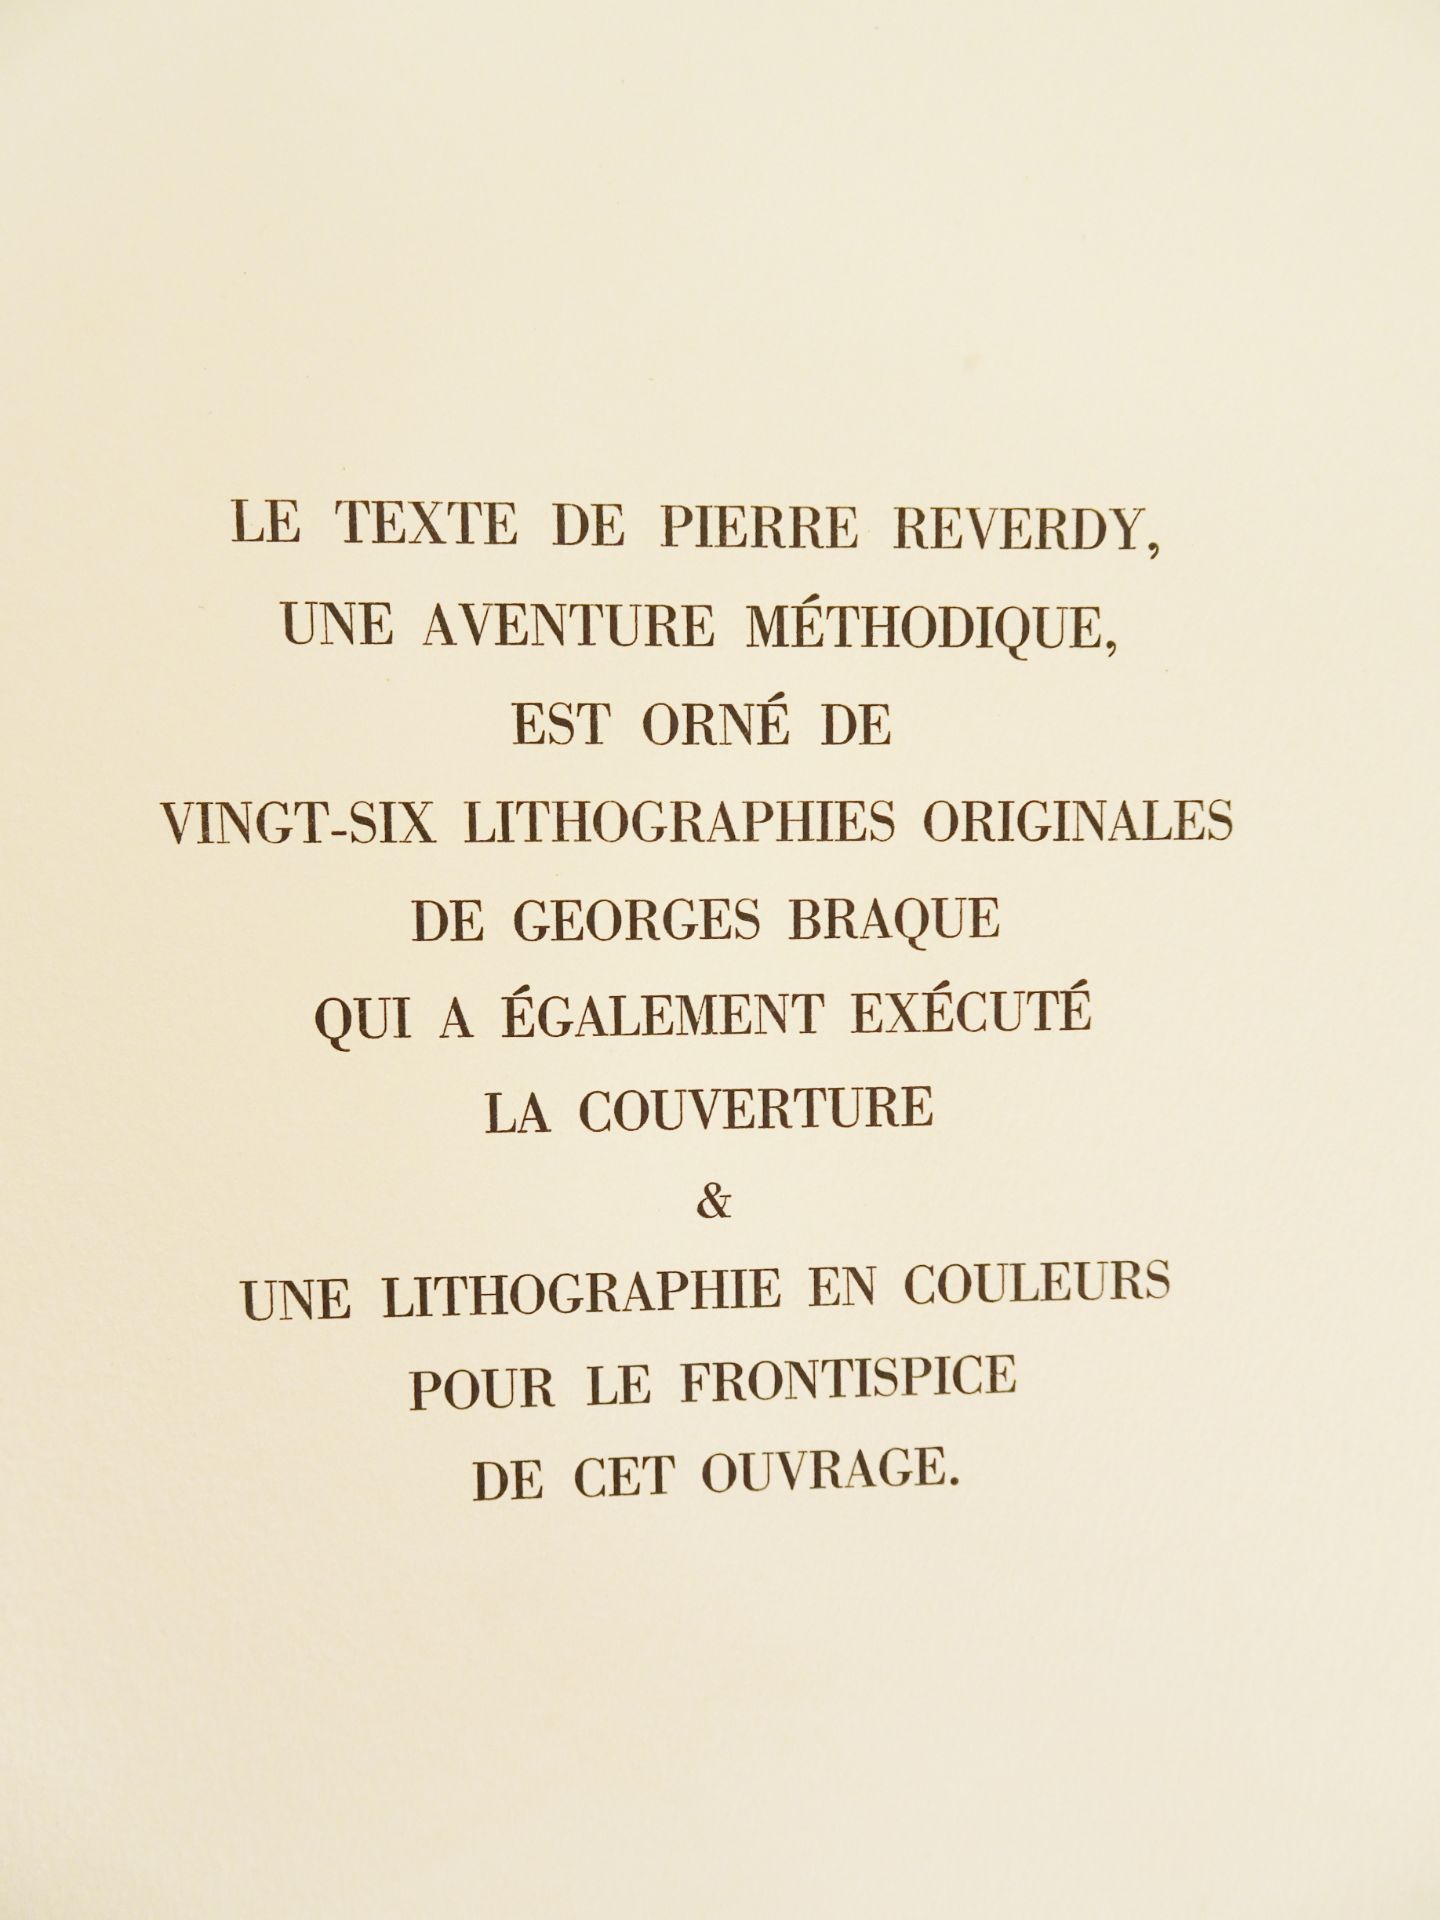 |Art| Braque George & REVERDY Pierre, "Une Aventure méthodique" - signé par l'artiste, 1950 - Image 12 of 17